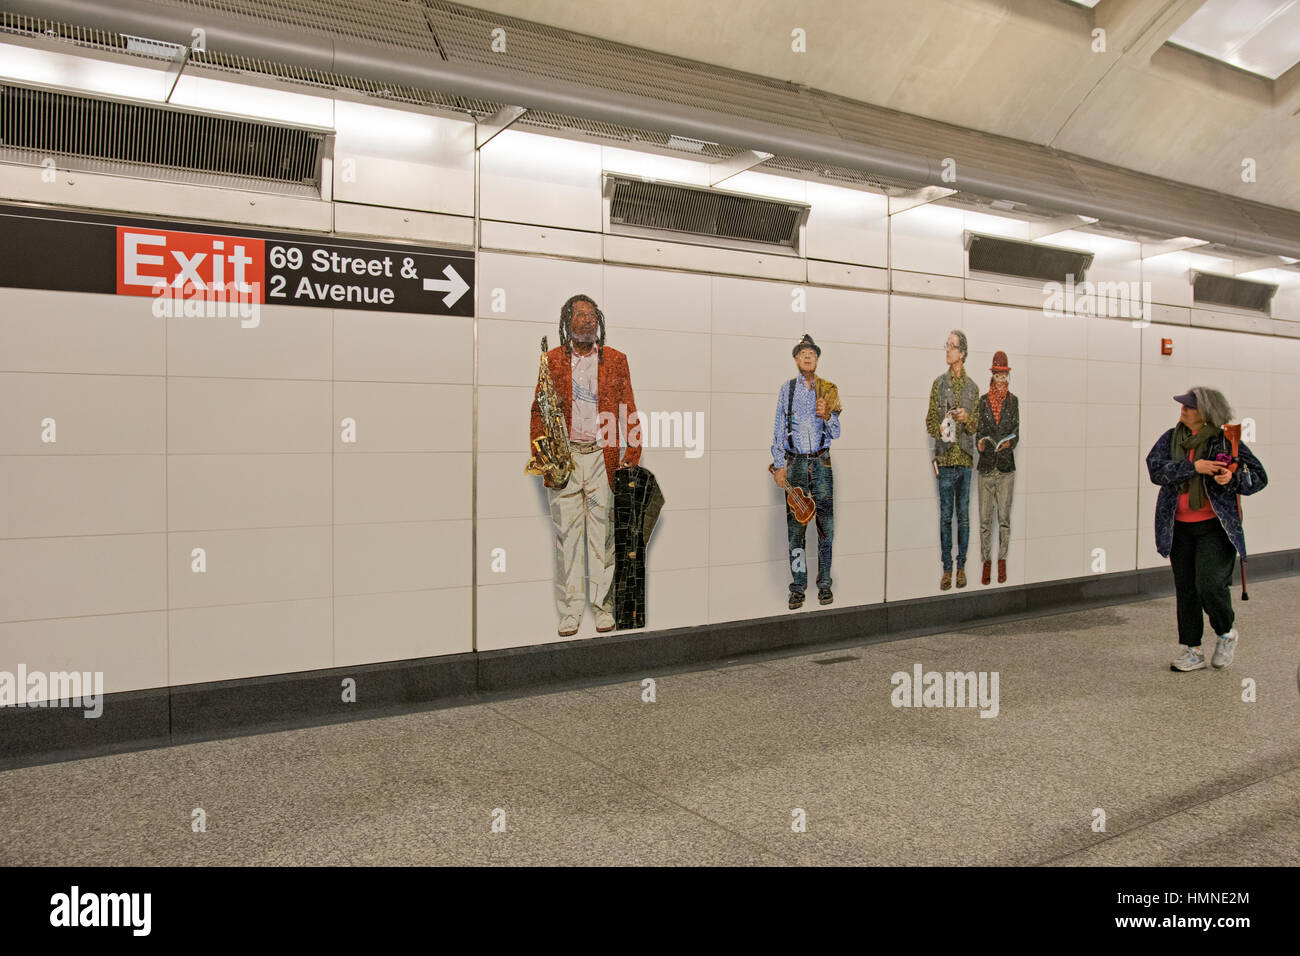 Métro art à la station 72nd Street sur la deuxième Avenue Q line à Manhattan, New York City. Banque D'Images